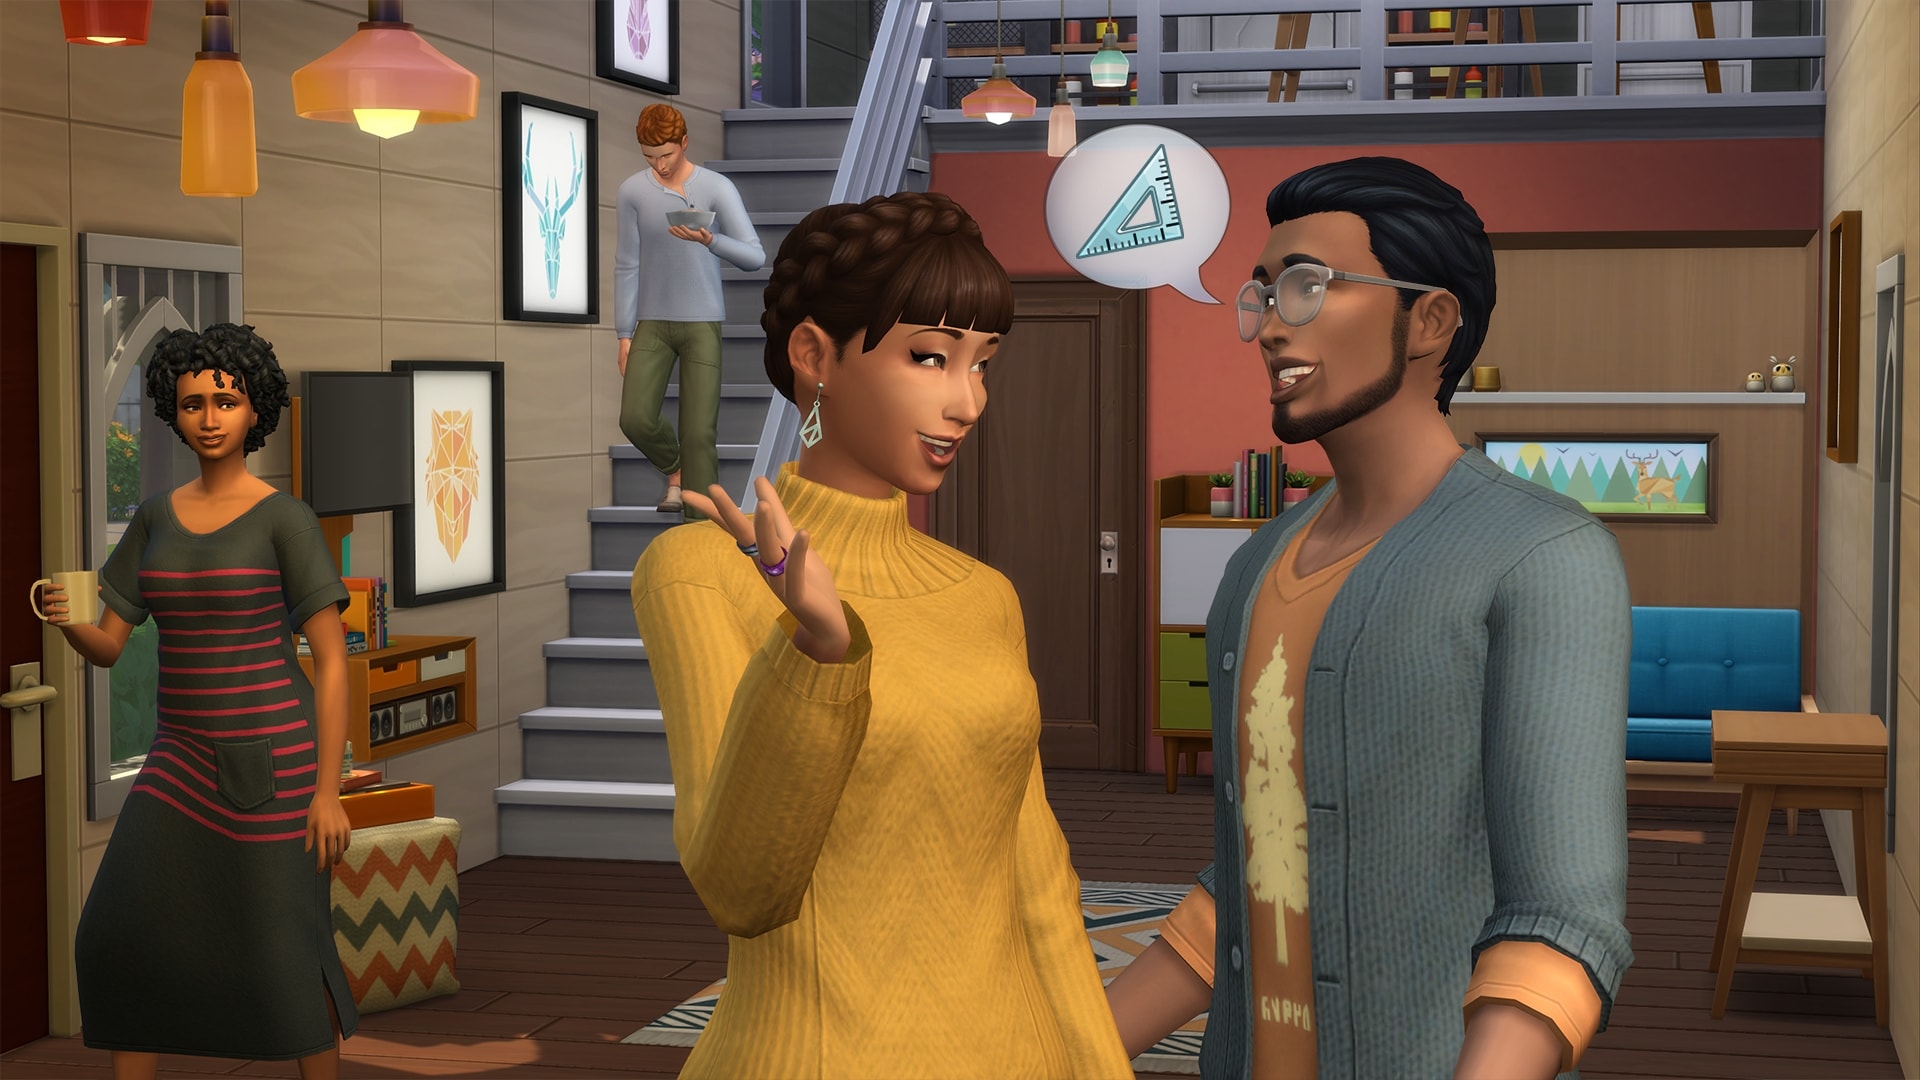 Каталог The Sims 4 Компактная жизнь выходит 21 января.